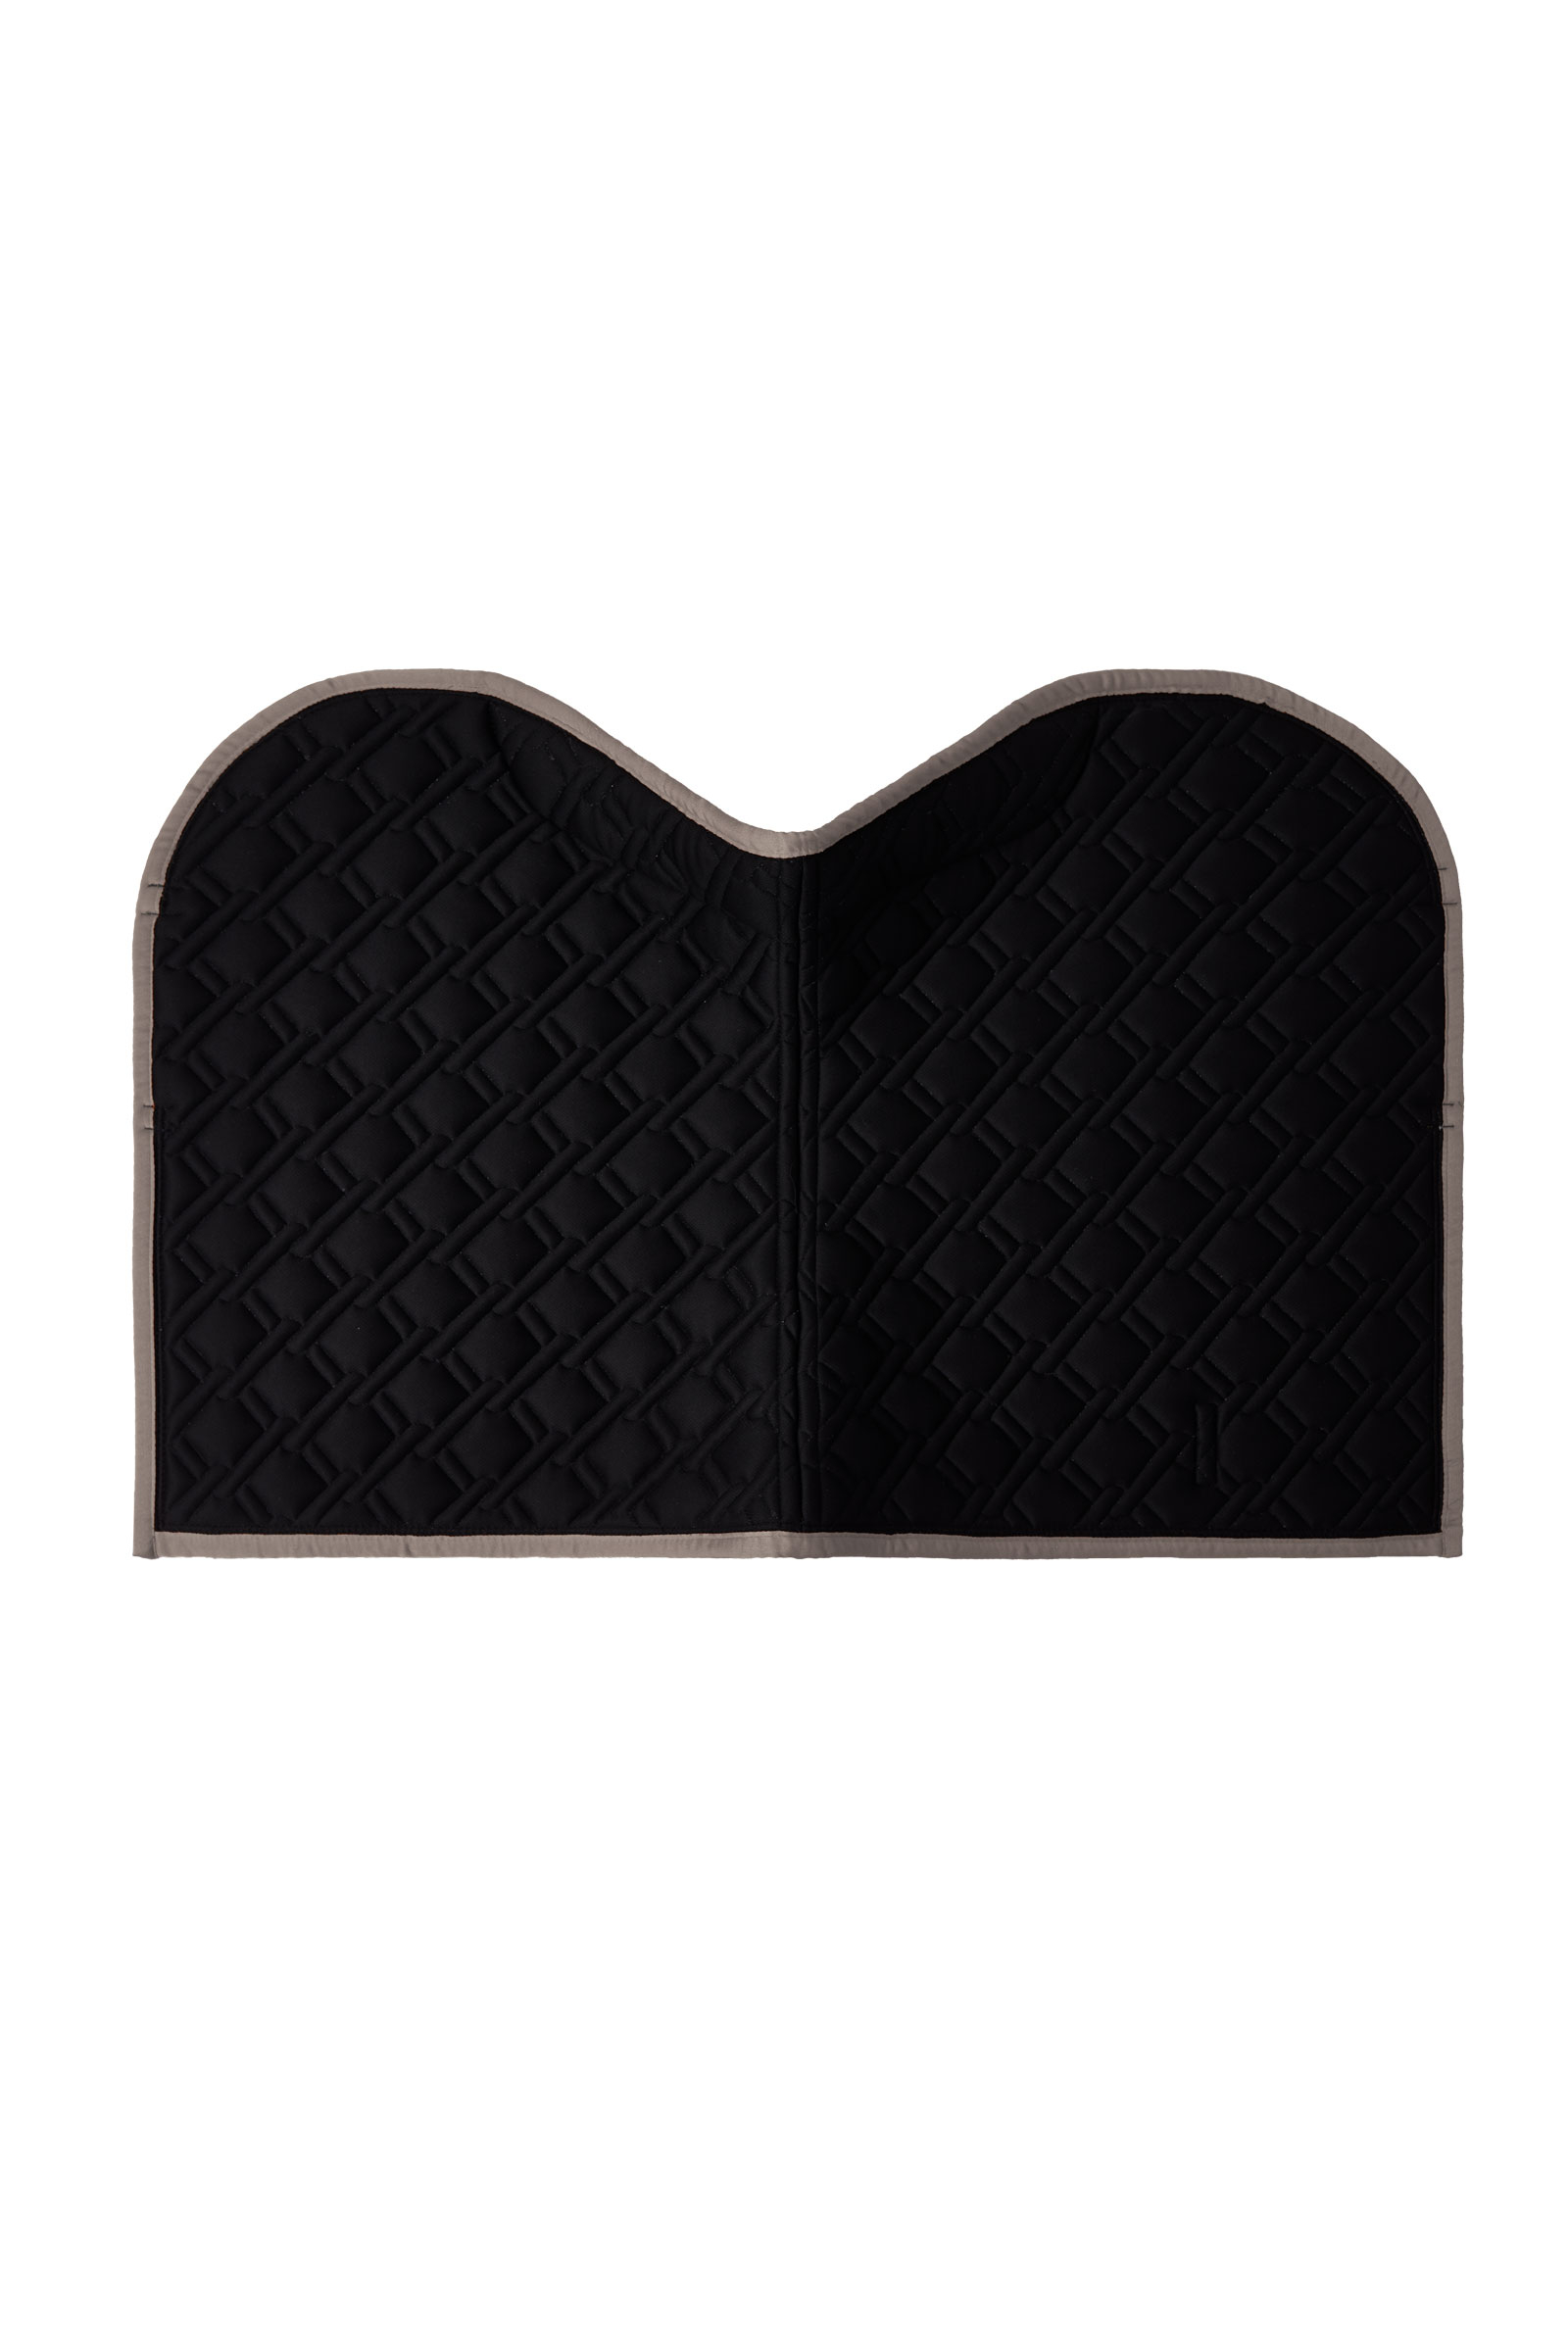 Buy B Vertigo Evolve Jumping Saddle Pad with Anti-Slip Cushion